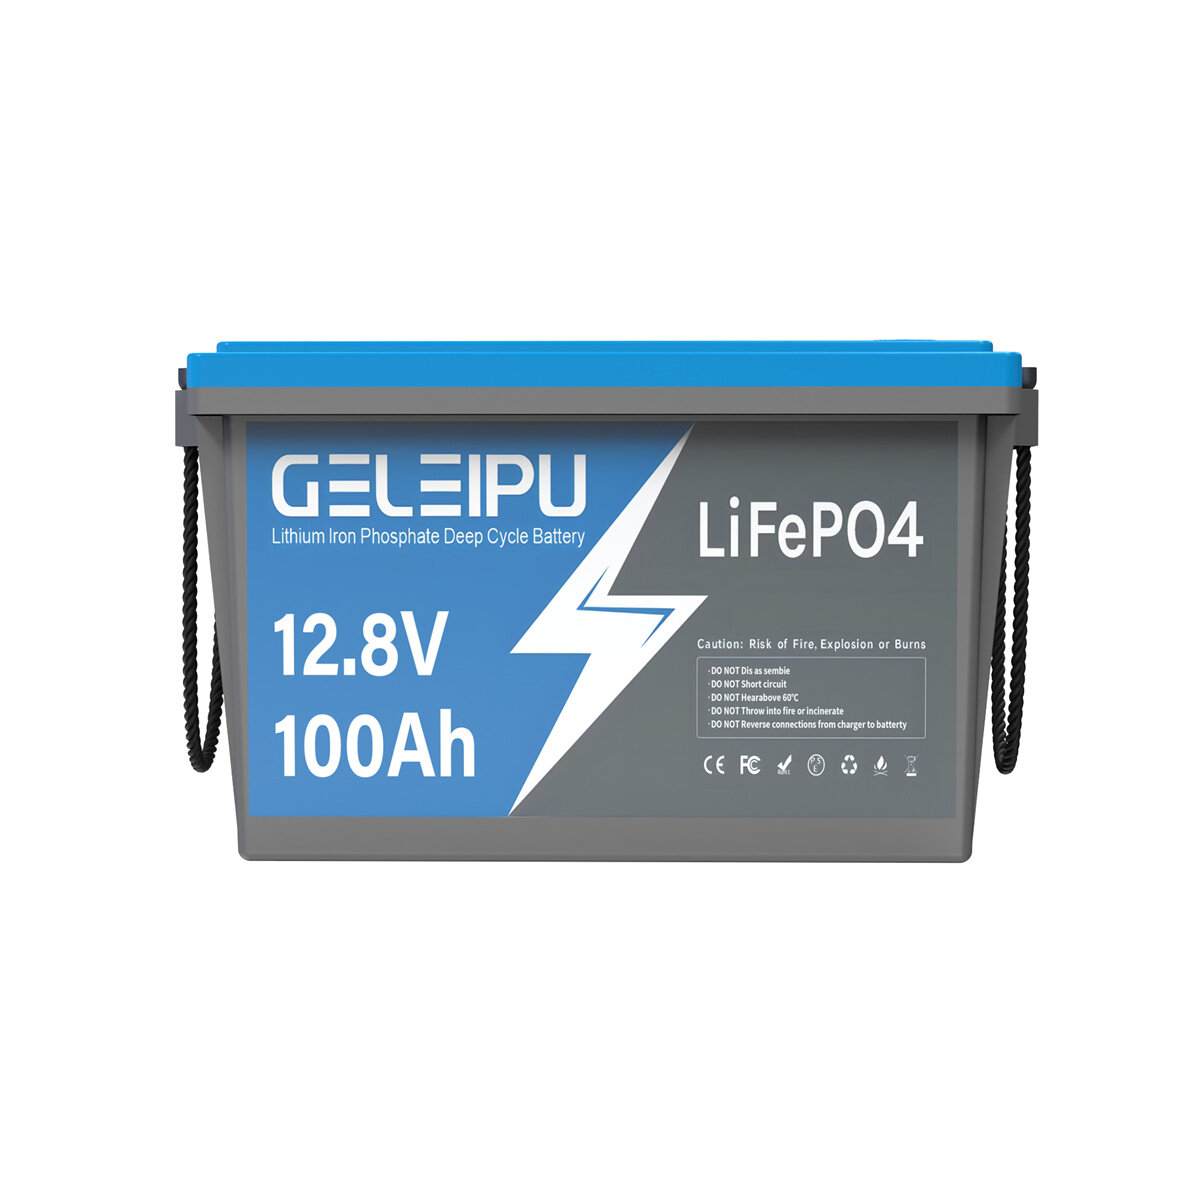 [EU Direct] Batería de litio recargable GELEIPU 12V 12.8V 100Ah LiFePO4, 1280Wh incorpora 100A BMS, con 4000-15000 ciclos, perfecta para motor trolling y sistema solar